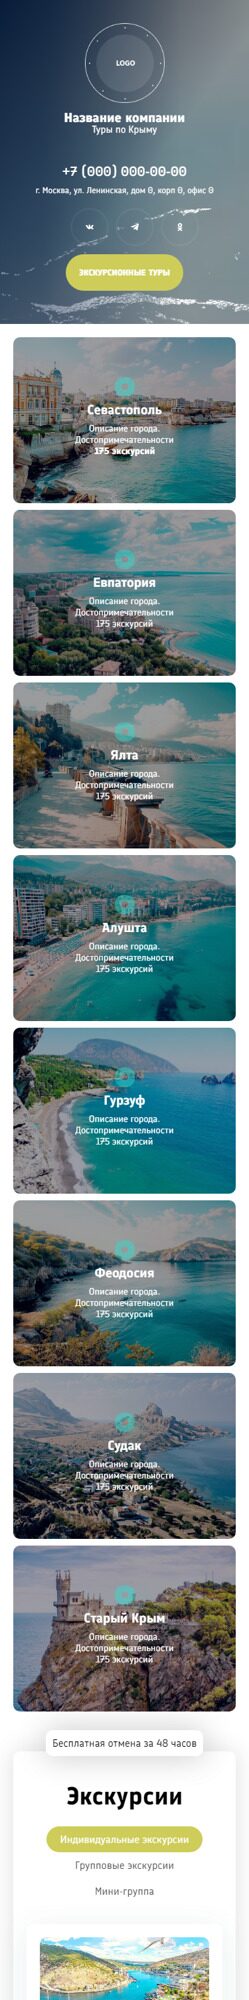 Готовый Сайт-Бизнес № 5843035 - Туры по Крыму (Мобильная версия)